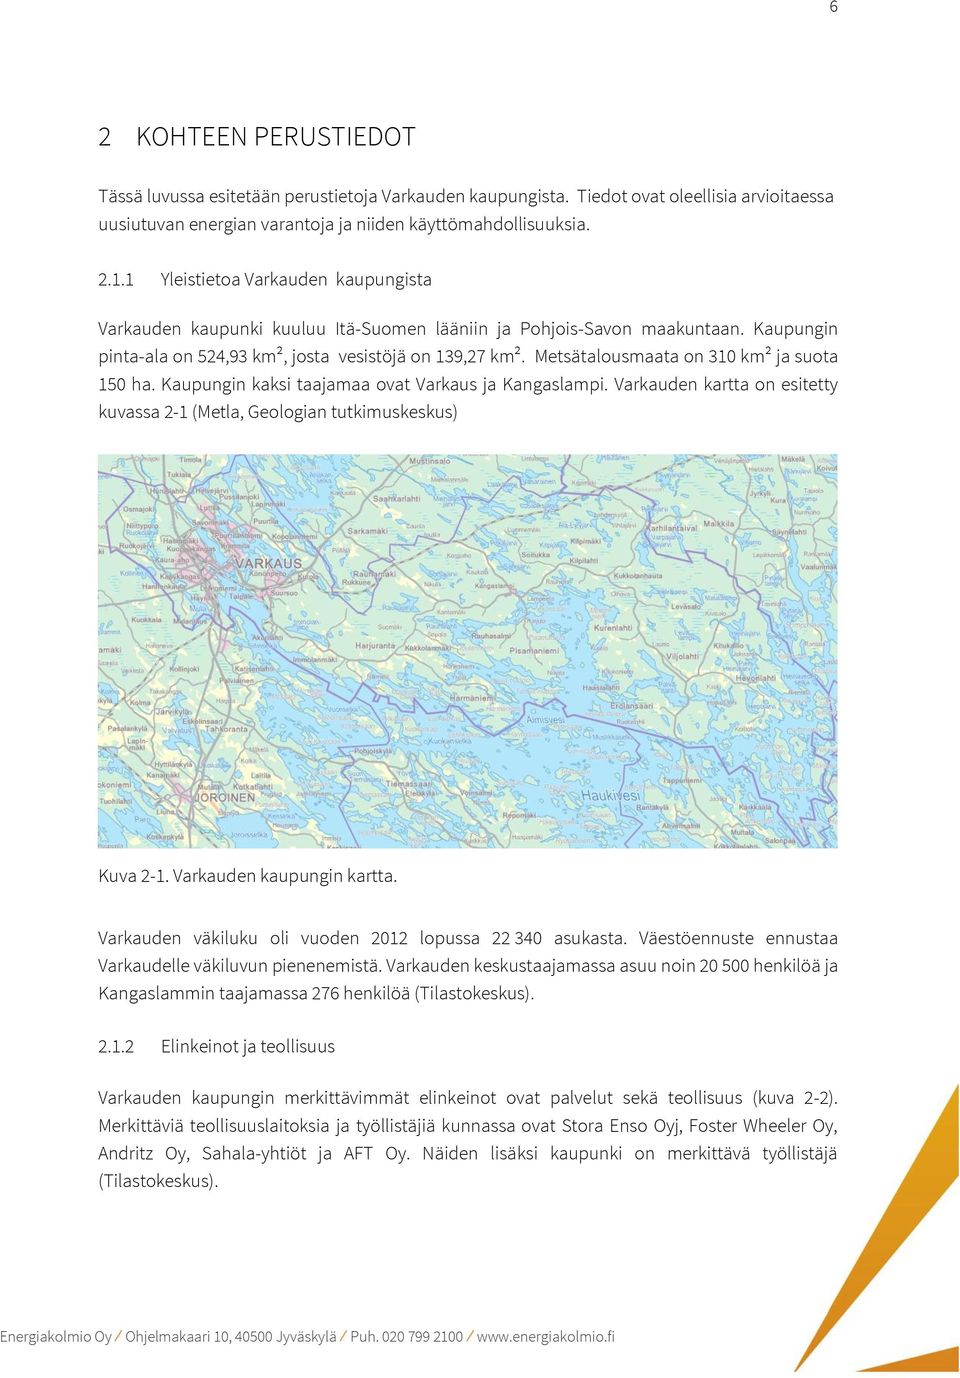 Metsätalousmaata on 310 km² ja suota 150 ha. Kaupungin kaksi taajamaa ovat Varkaus ja Kangaslampi. Varkauden kartta on esitetty kuvassa 2-1 (Metla, Geologian tutkimuskeskus) Kuva 2-1.